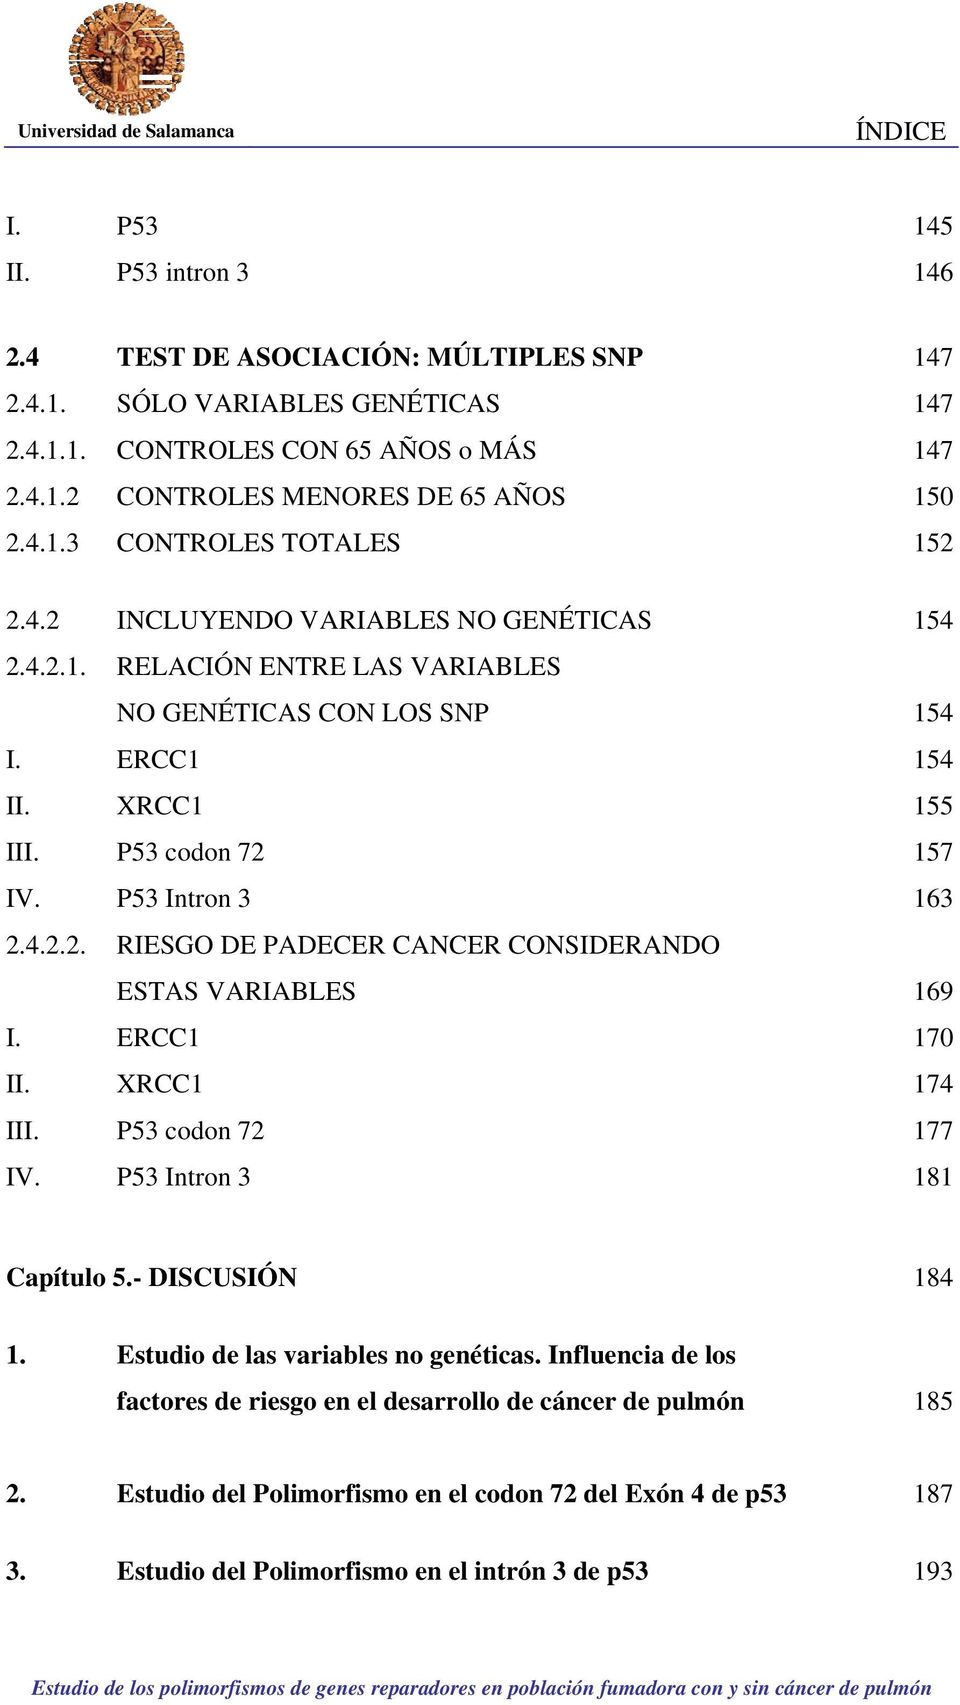 P53 Intron 3 163 2.4.2.2. RIESGO DE PADECER CANCER CONSIDERANDO ESTAS VARIABLES 169 I. ERCC1 170 II. XRCC1 174 III. P53 codon 72 177 IV. P53 Intron 3 181 Capítulo 5.- DISCUSIÓN 184 1.